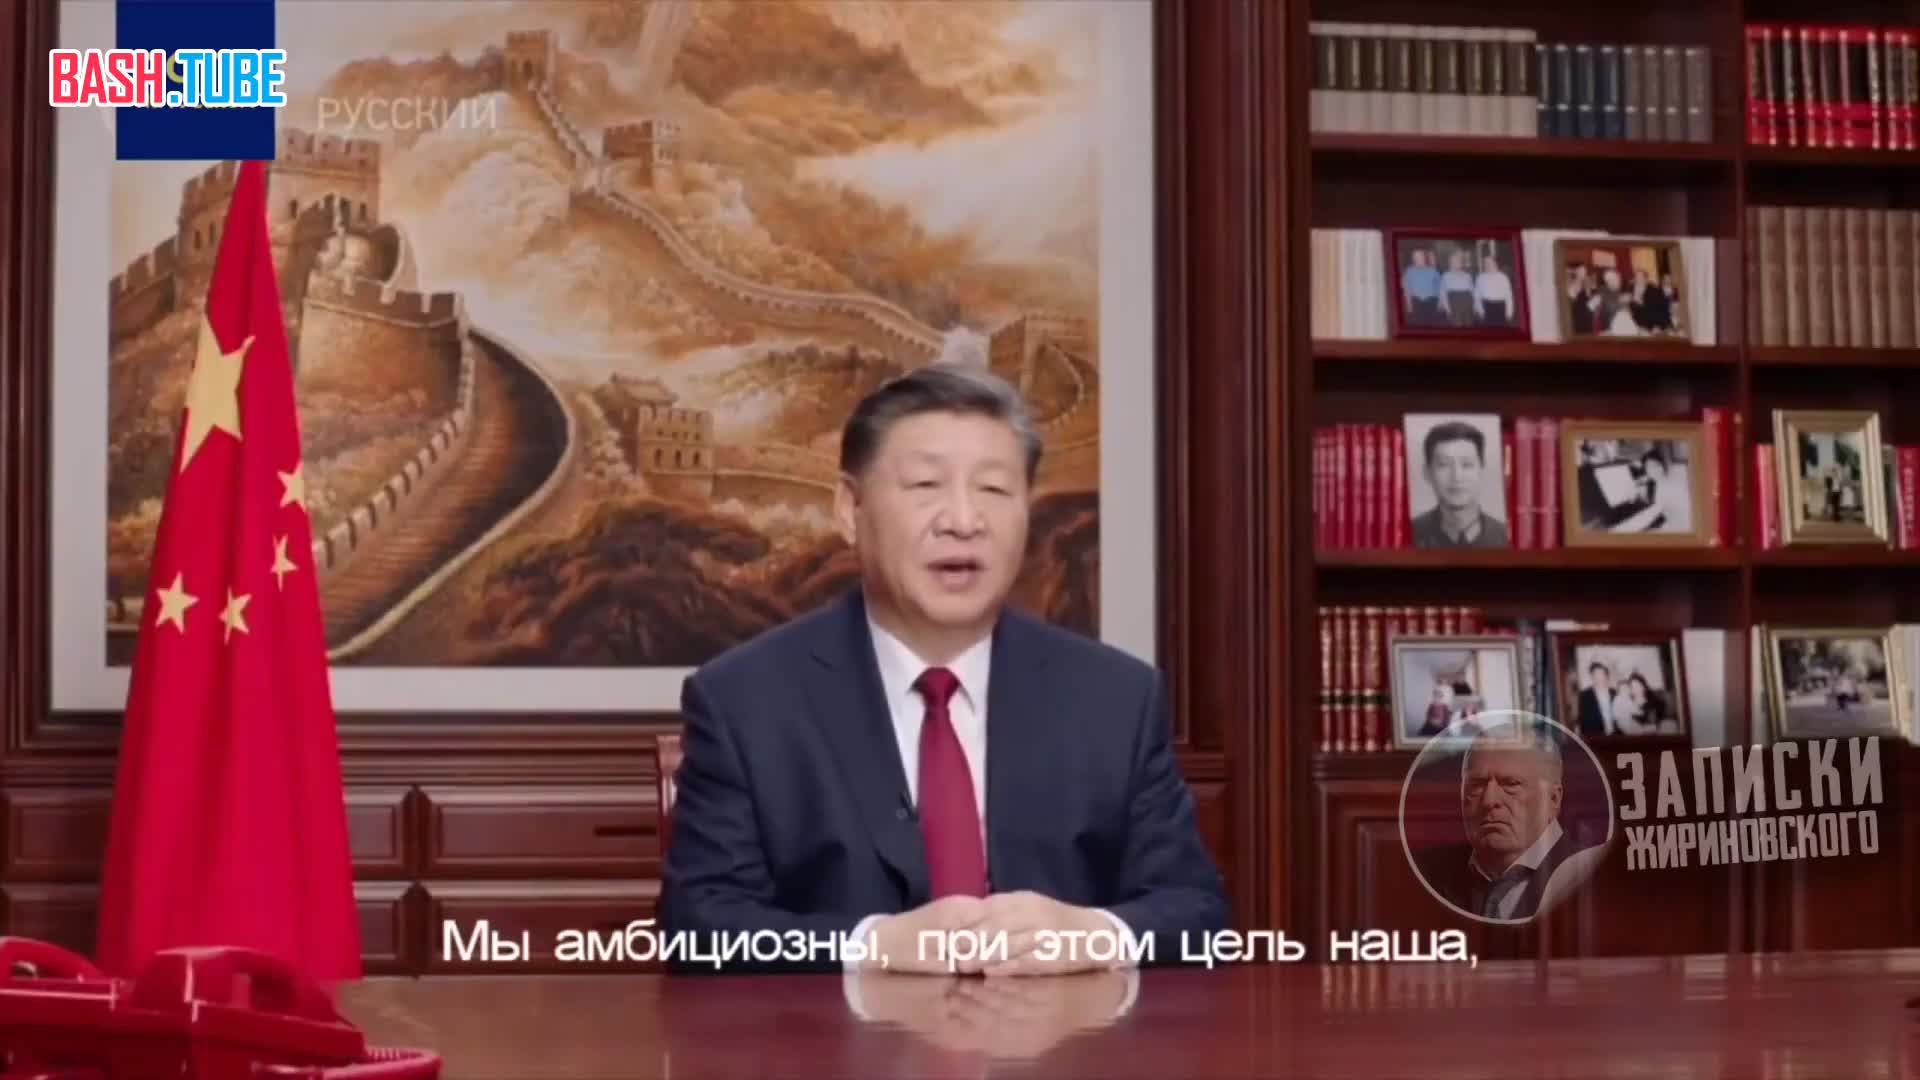  «Китай обязательно воссоединится», - председатель КНР Си Цзиньпин в новогоднем обращении